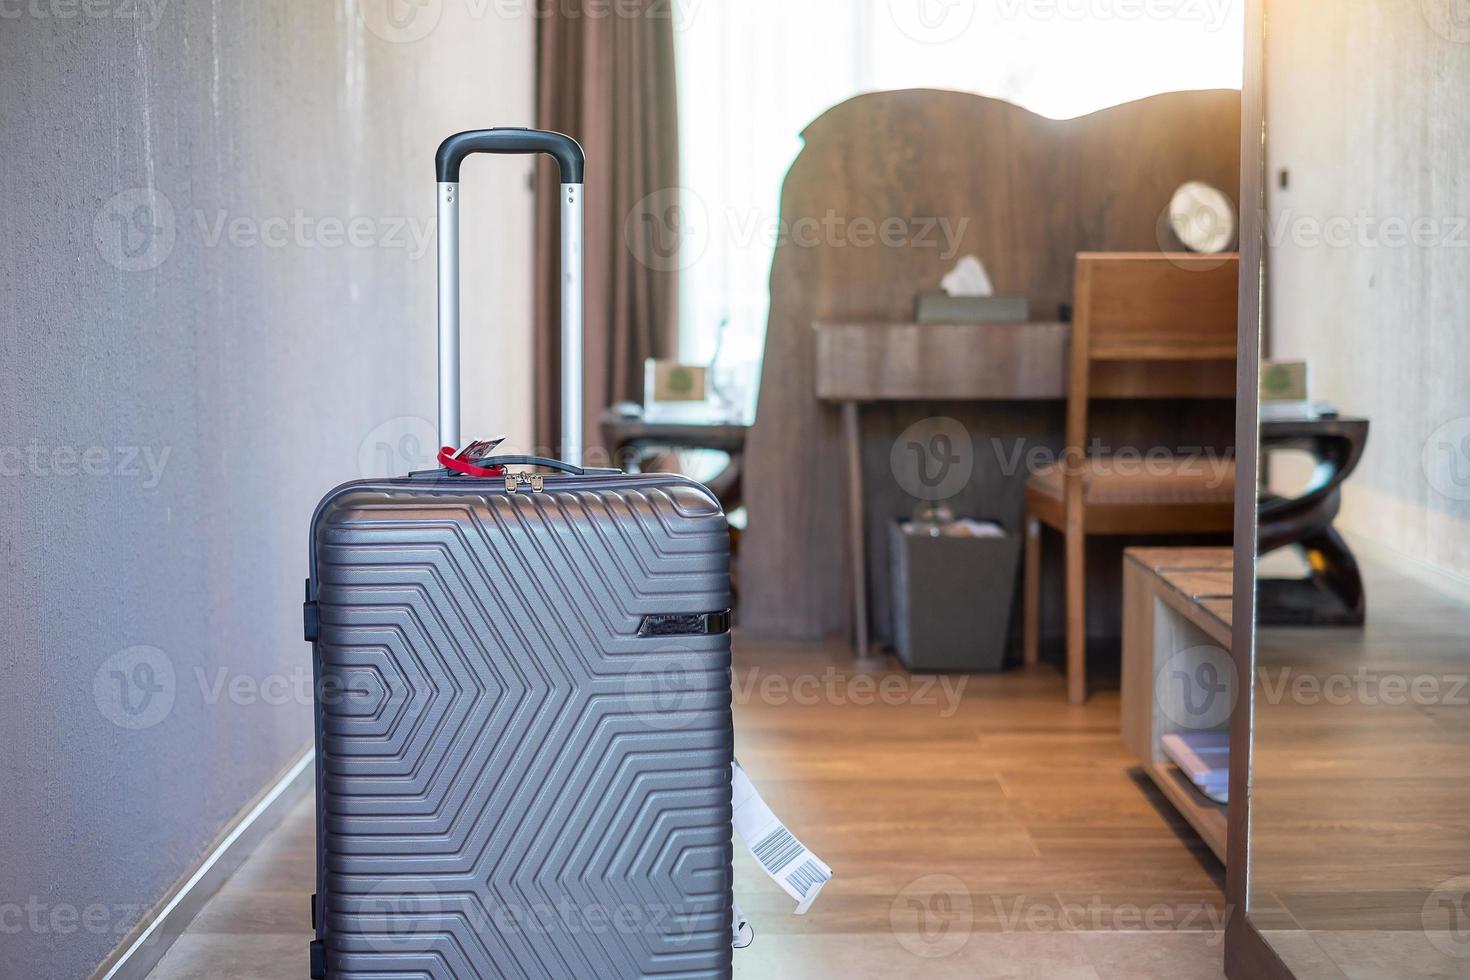 bagages gris dans une chambre d'hôtel moderne avec fenêtres, rideaux et lit. le temps de voyager, de détente, de voyage, de voyages et de concepts de vacances photo